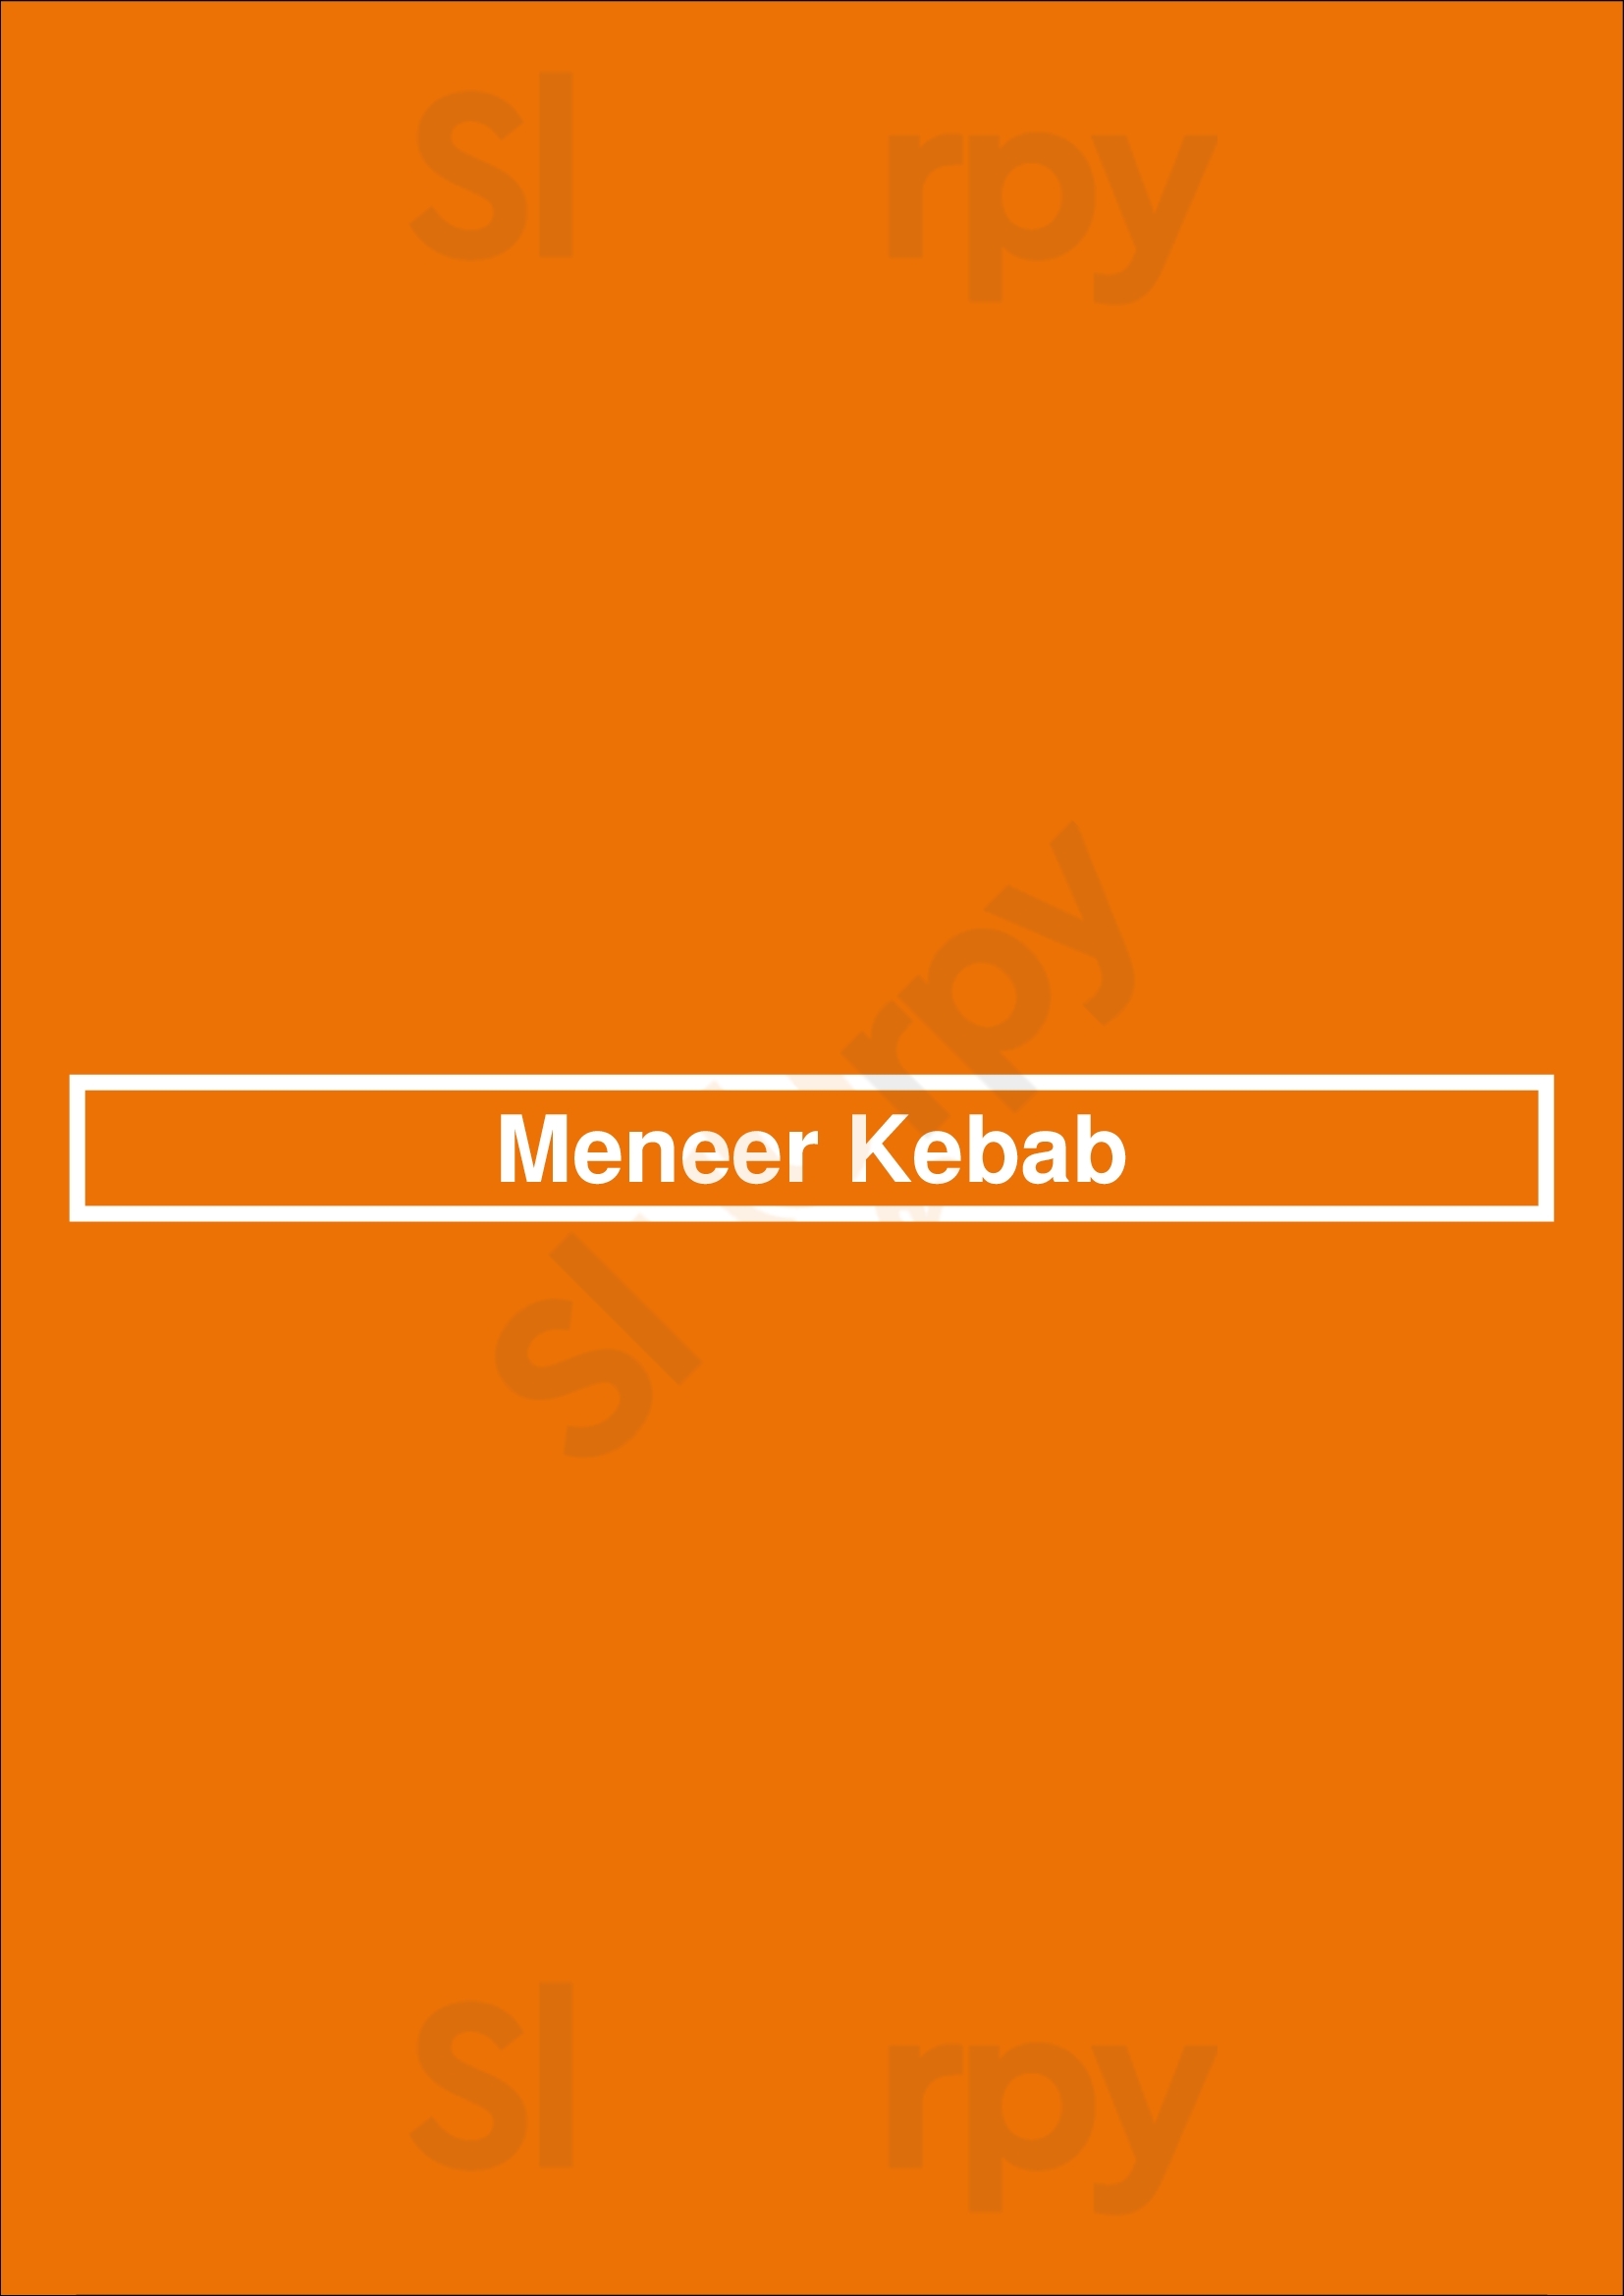 Meneer Kebab Amsterdam Menu - 1